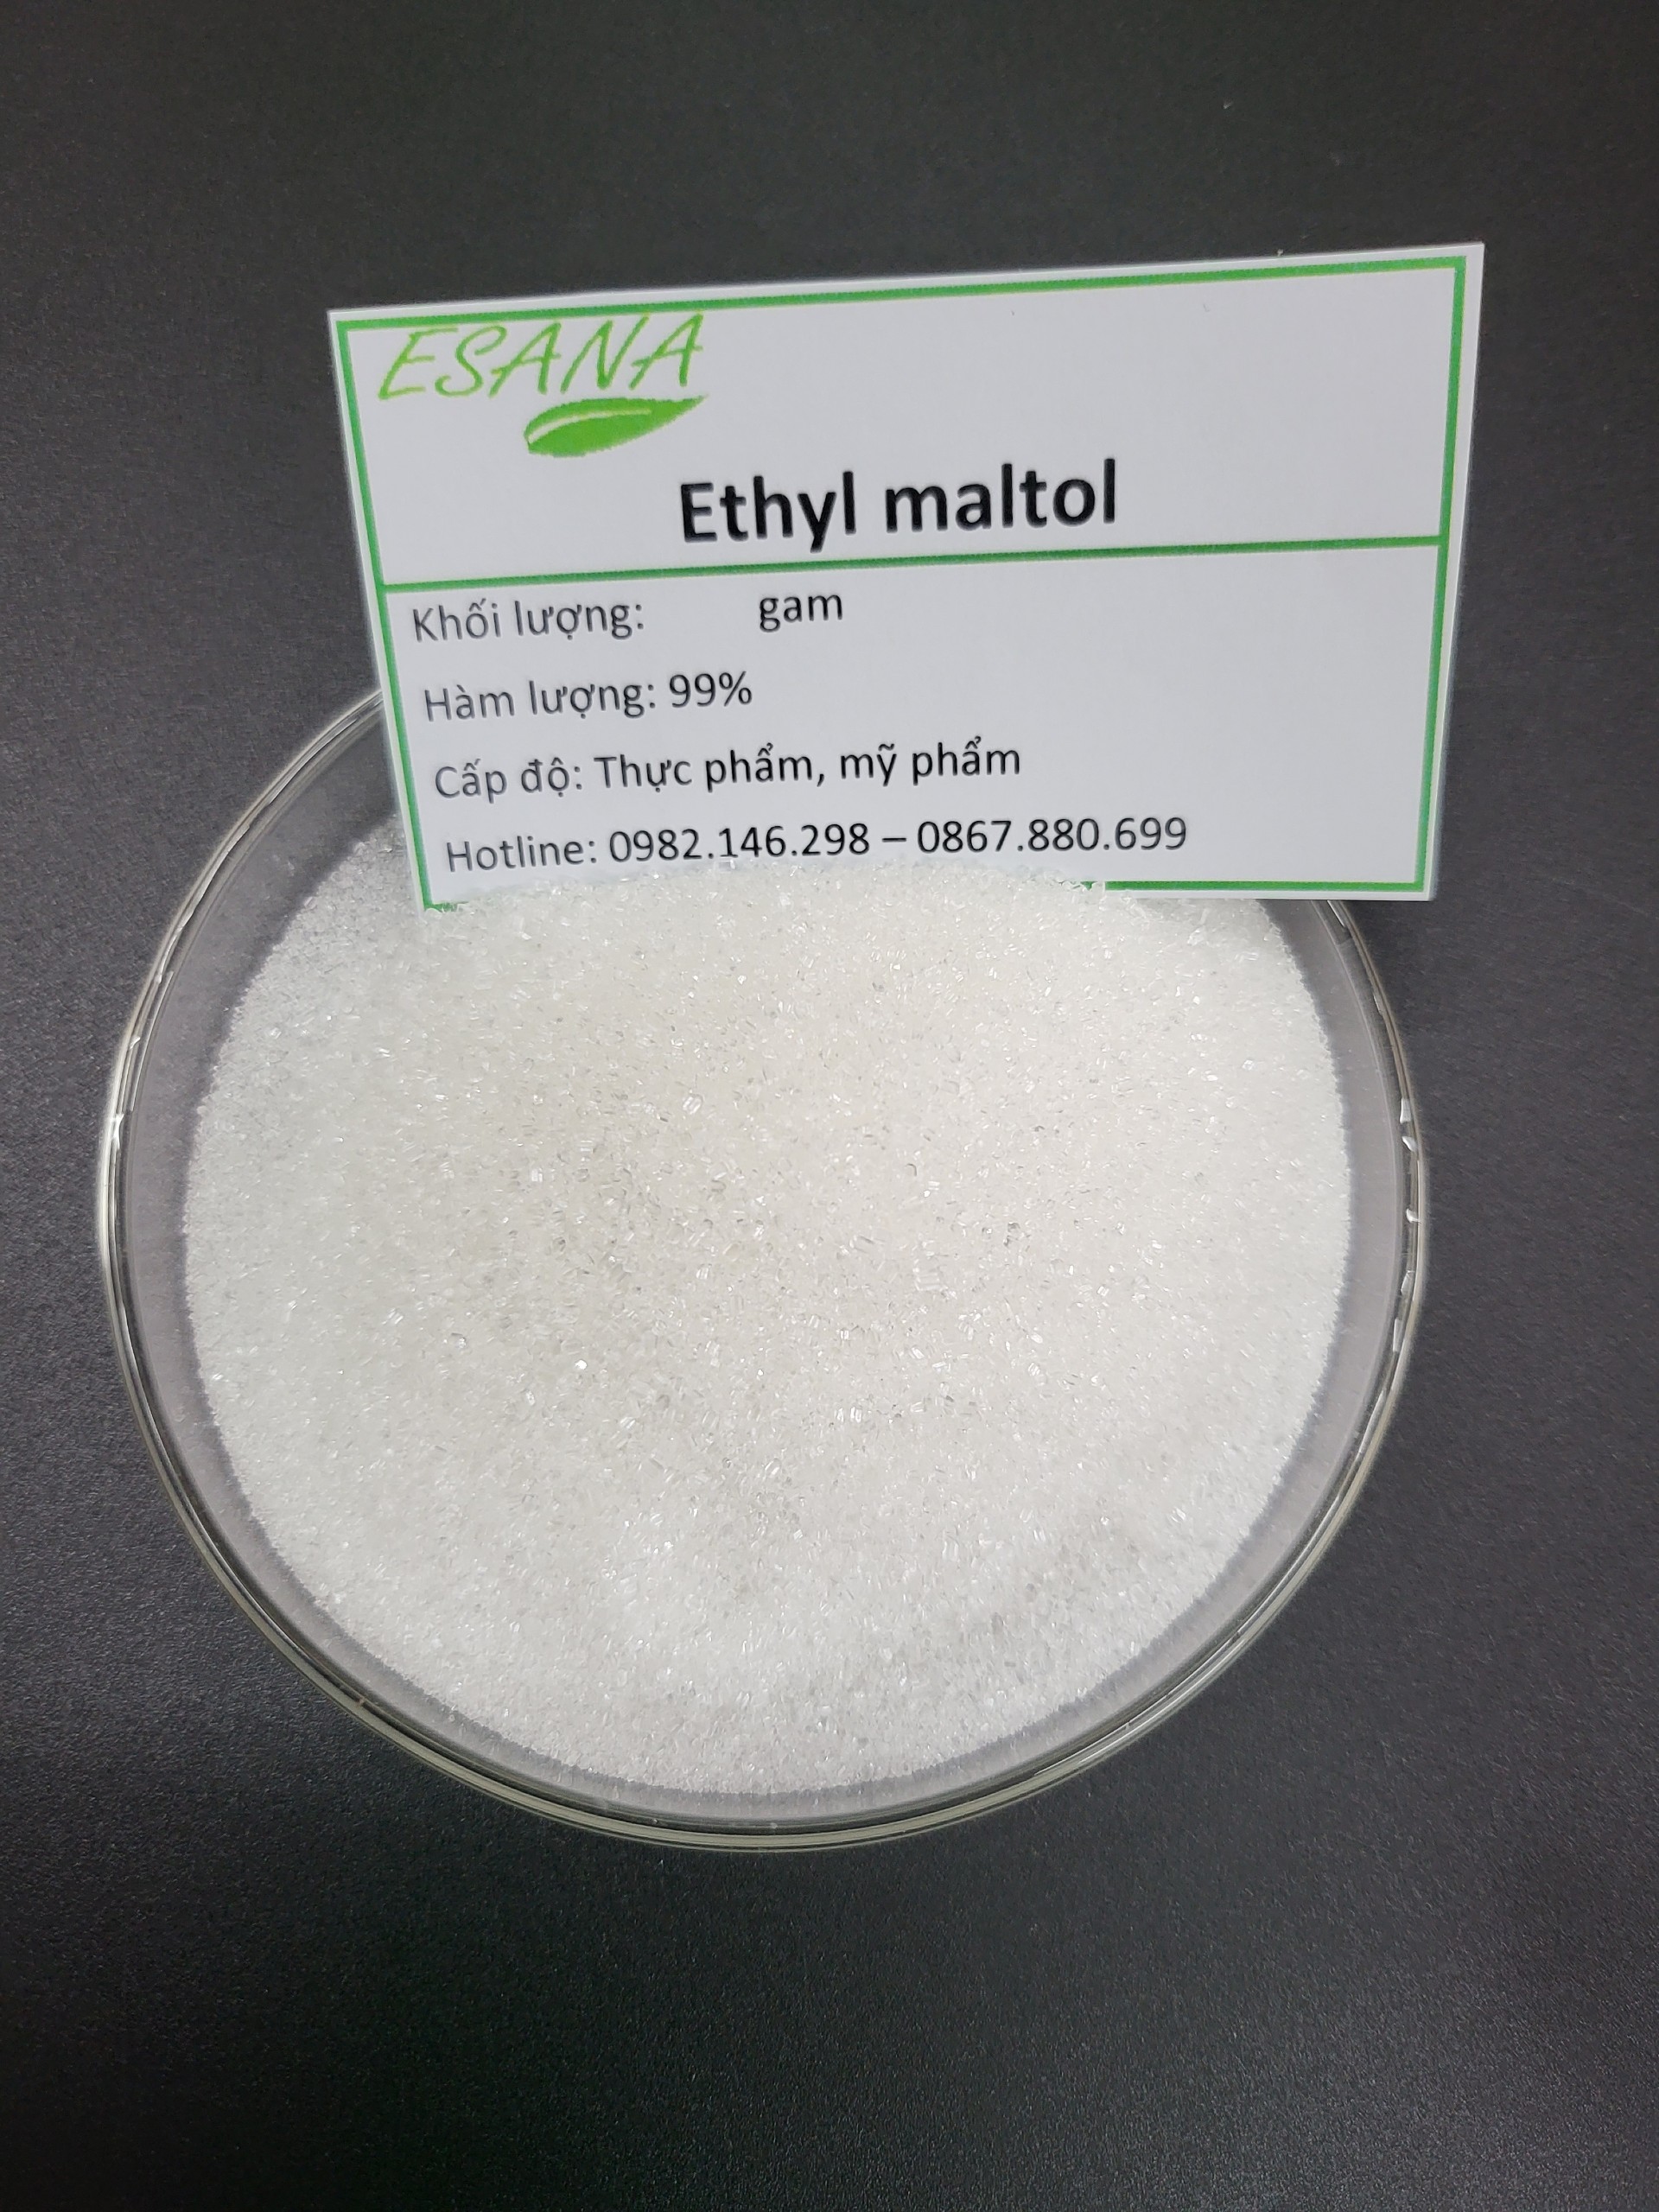 Ethyl Maltol chất kích hương, tăng hương